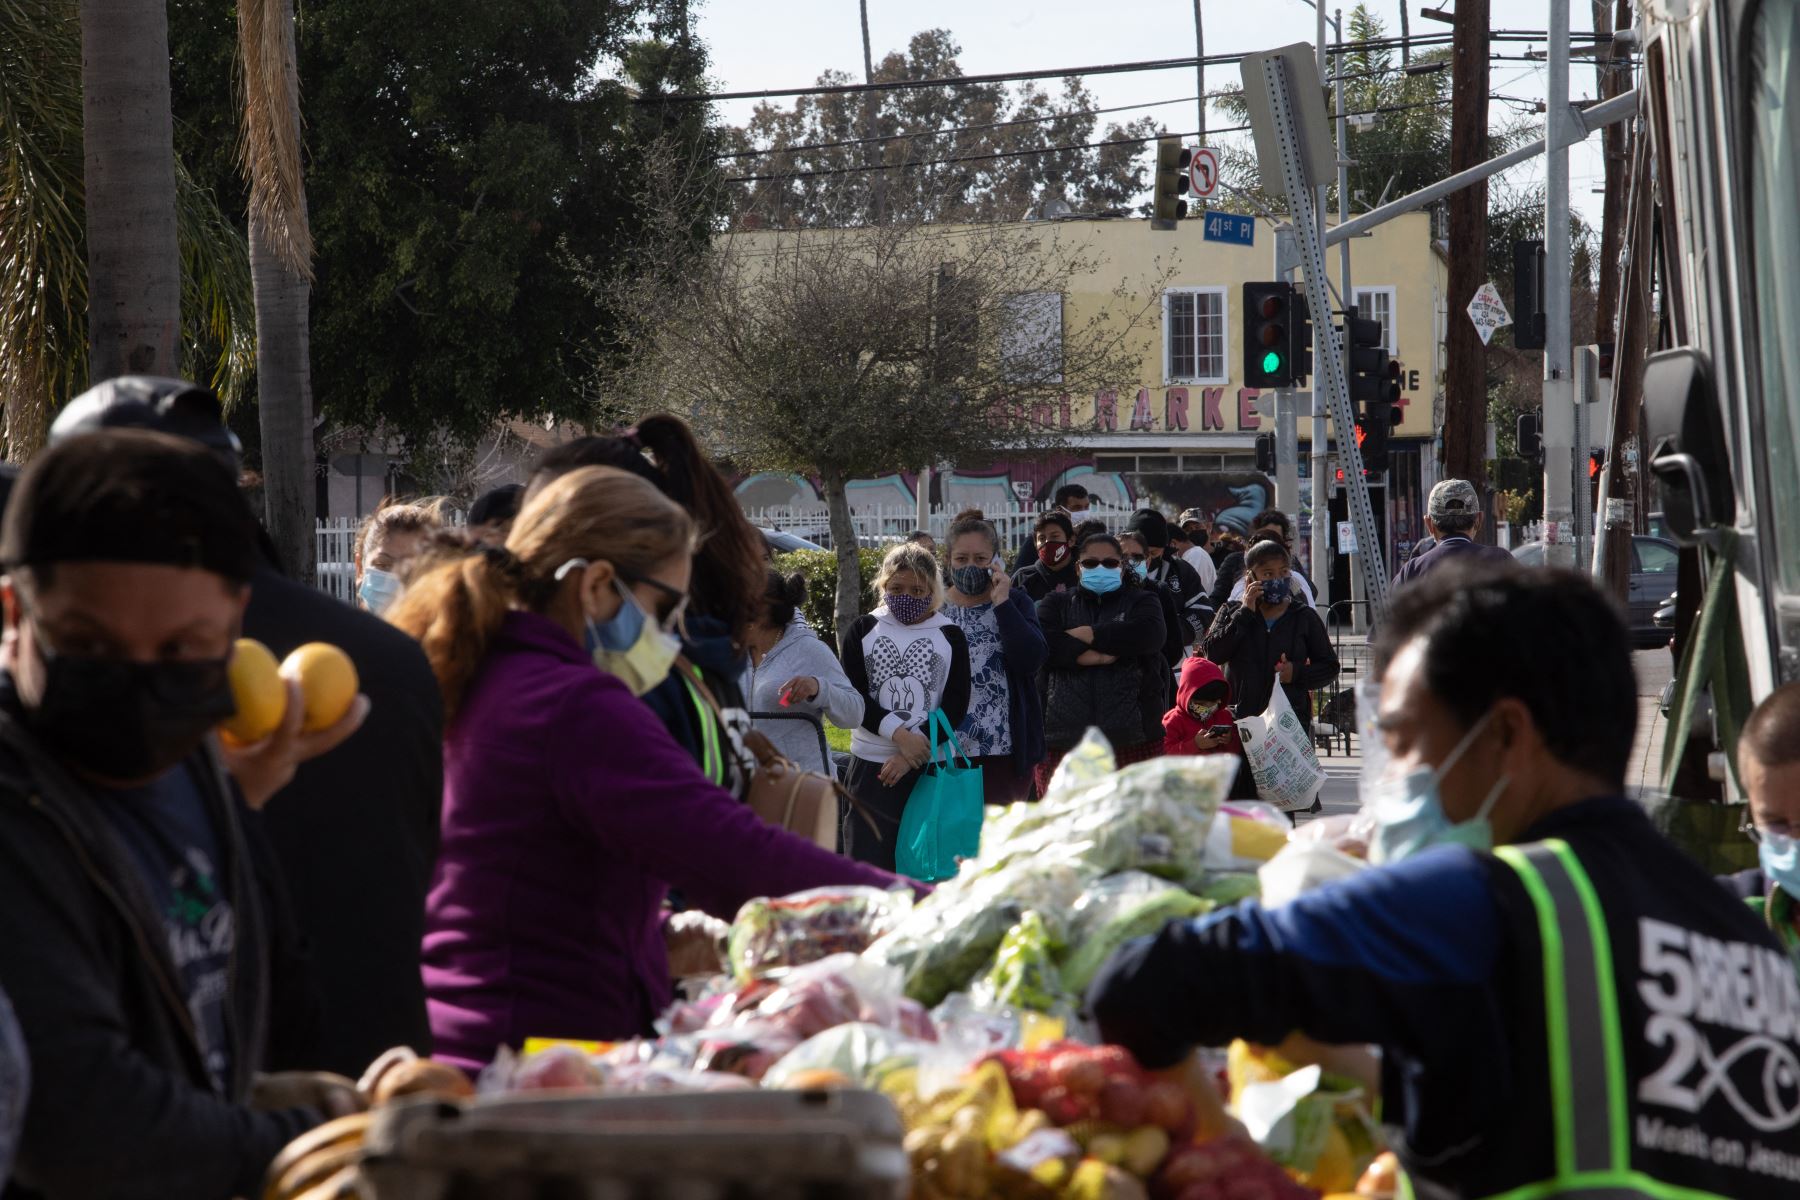 Voluntarios empacan comida mientras la gente espera en fila en el Centro de Distribución de Alimentos "5 Breads & 2 Fish" en el Centro Sur de Los Ángeles, California. Foto: AFP